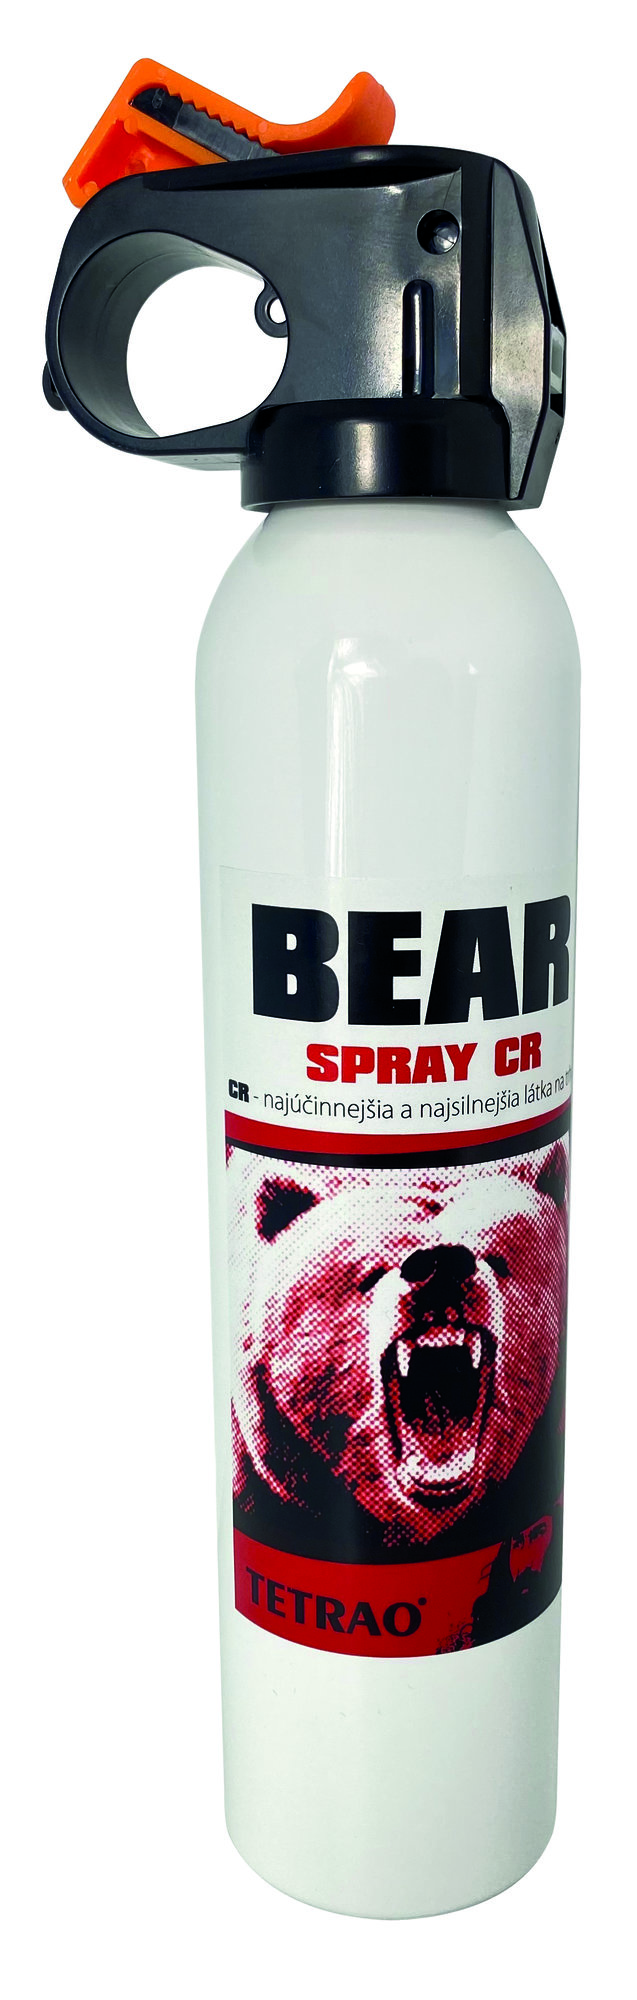 TETRAO obranný sprej proti medveďom - Bear spray CR 300ml